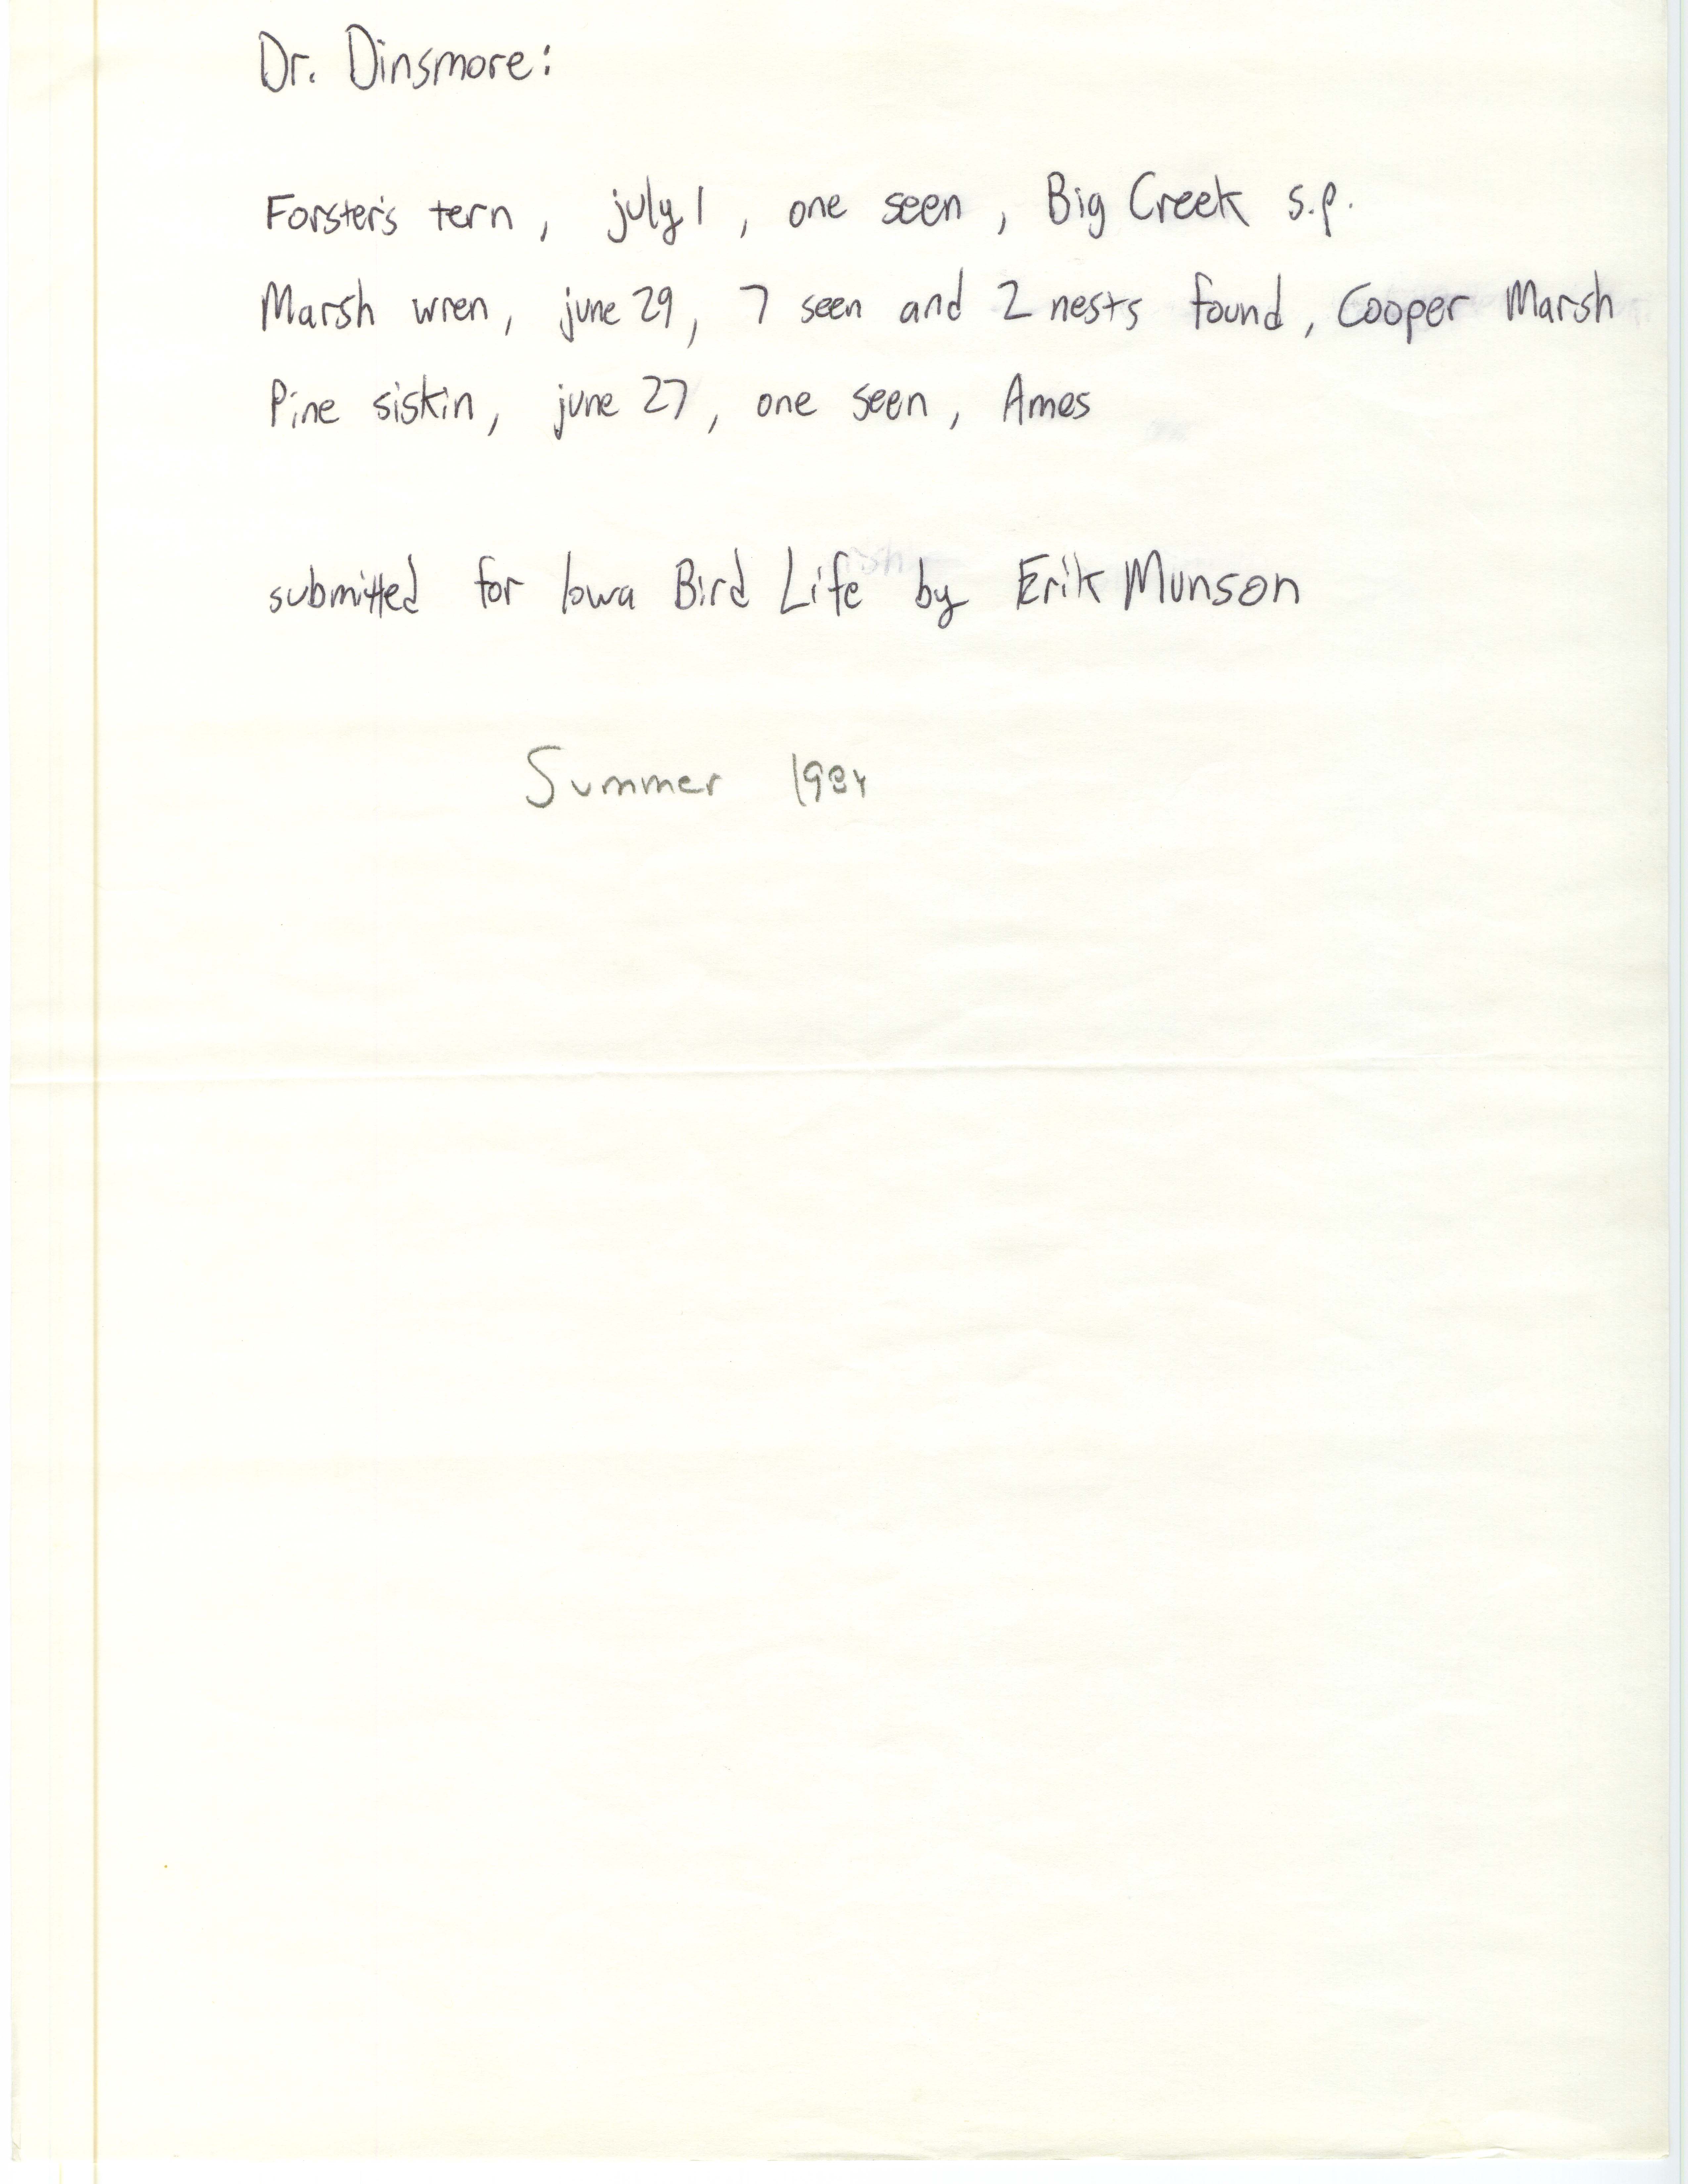 Erik Munson letter to James J. Dinsmore regarding sightings for Iowa Bird Life, summer 1984